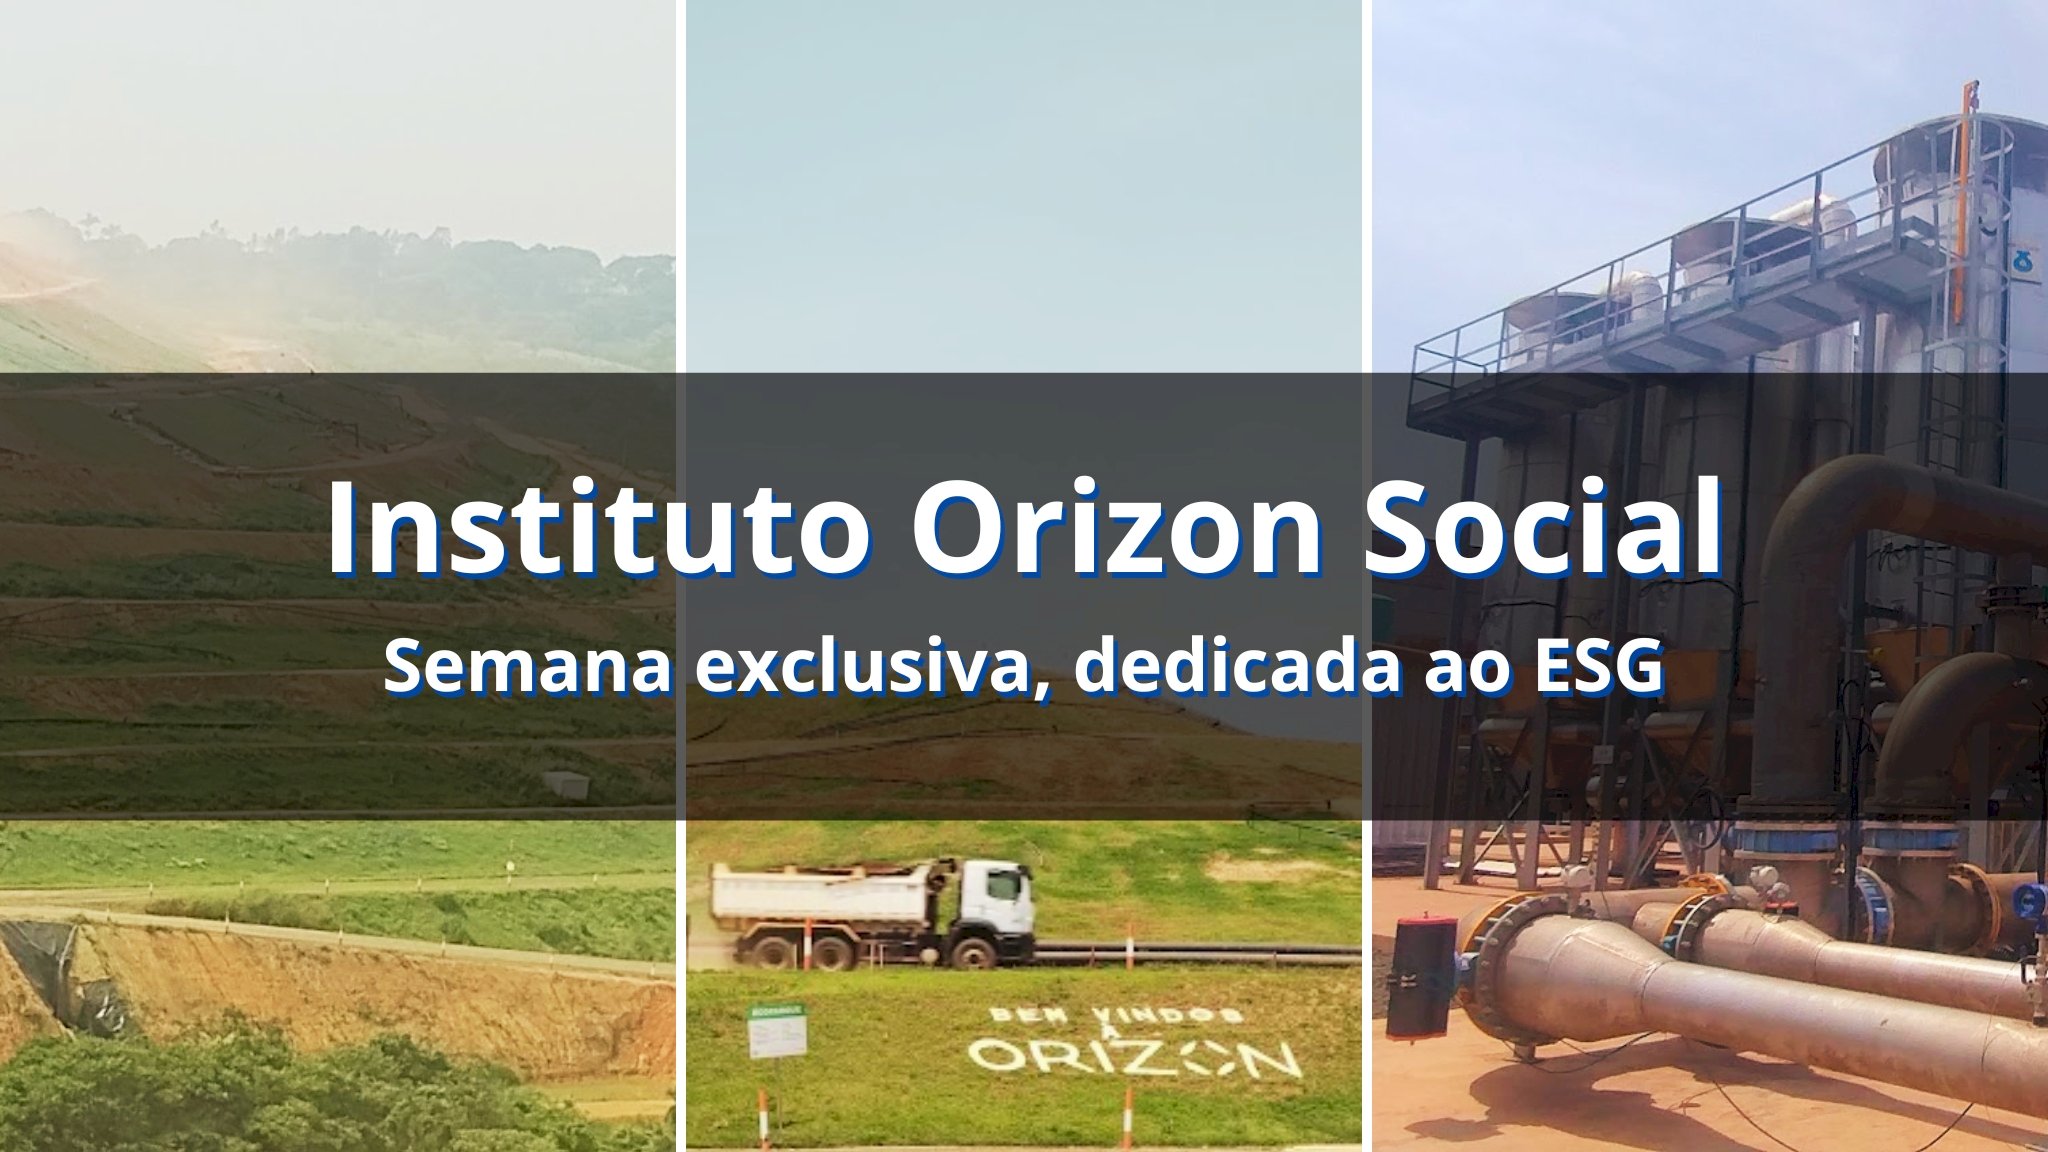 Impacto e projetos sociais do Instituto Orizon Social são destaques em semana exclusiva, dedicada ao ESG